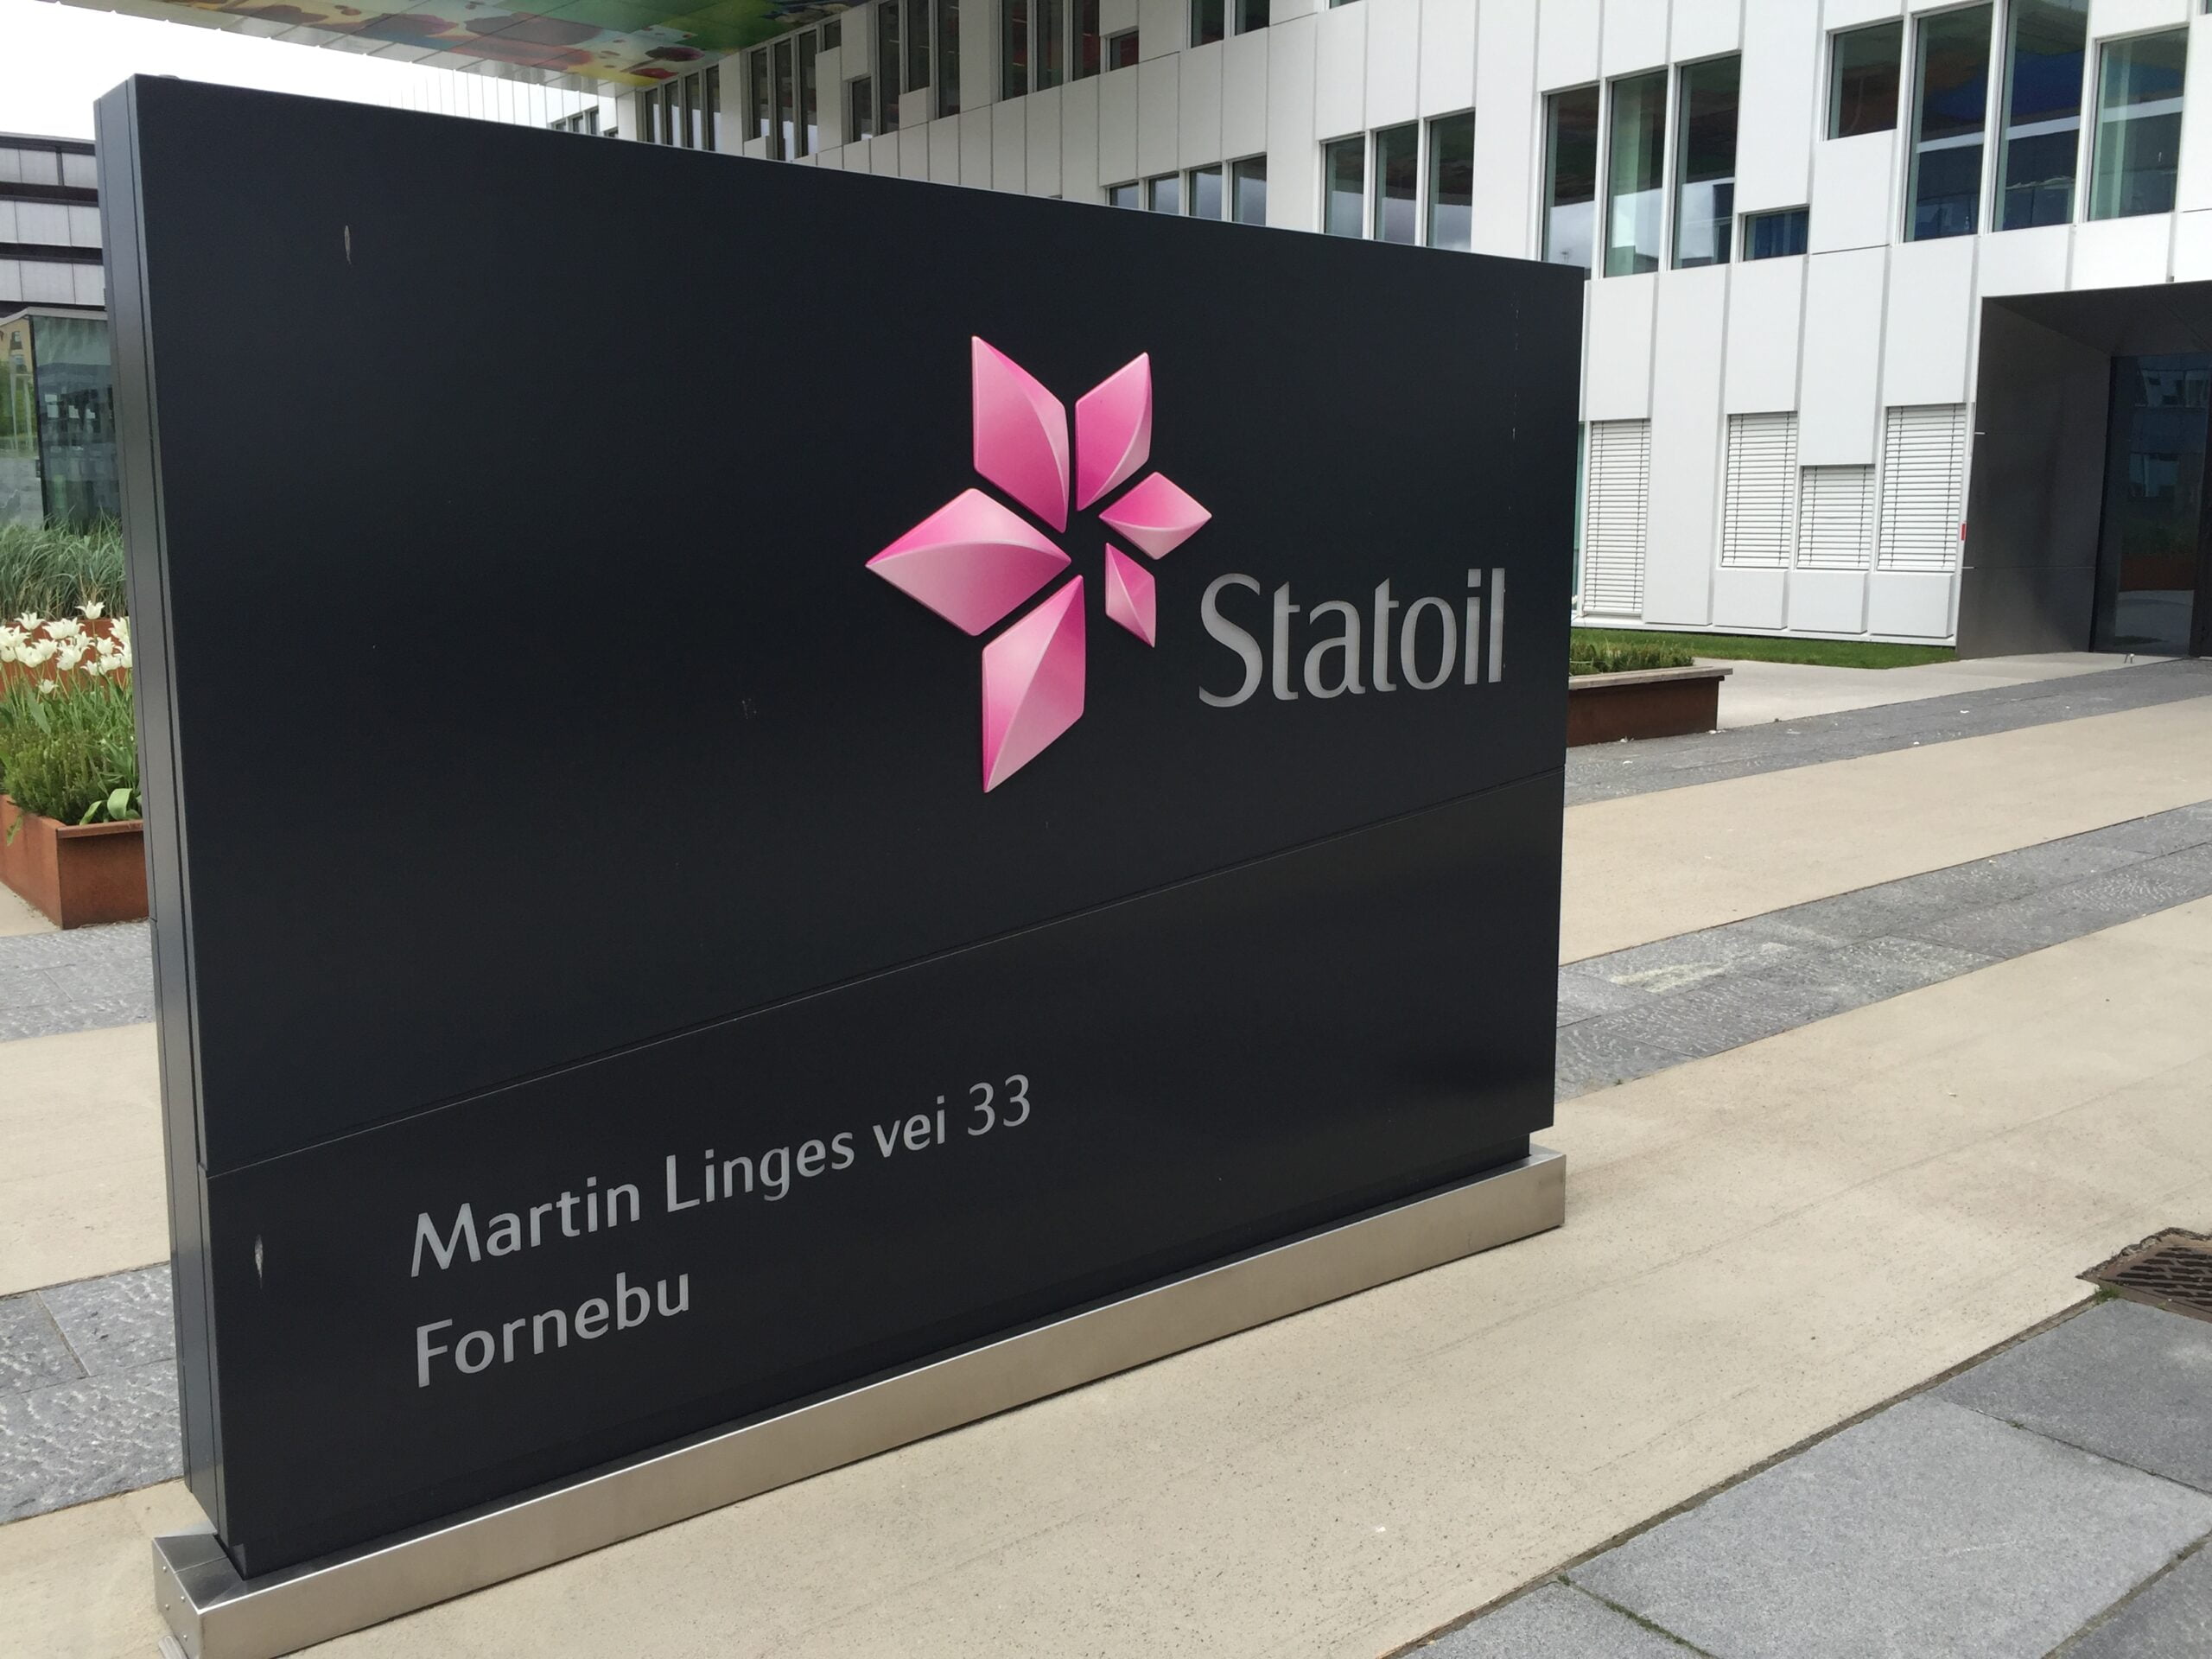 Deux compagnies maritimes ont remporté d'importants contrats Statoil - 3